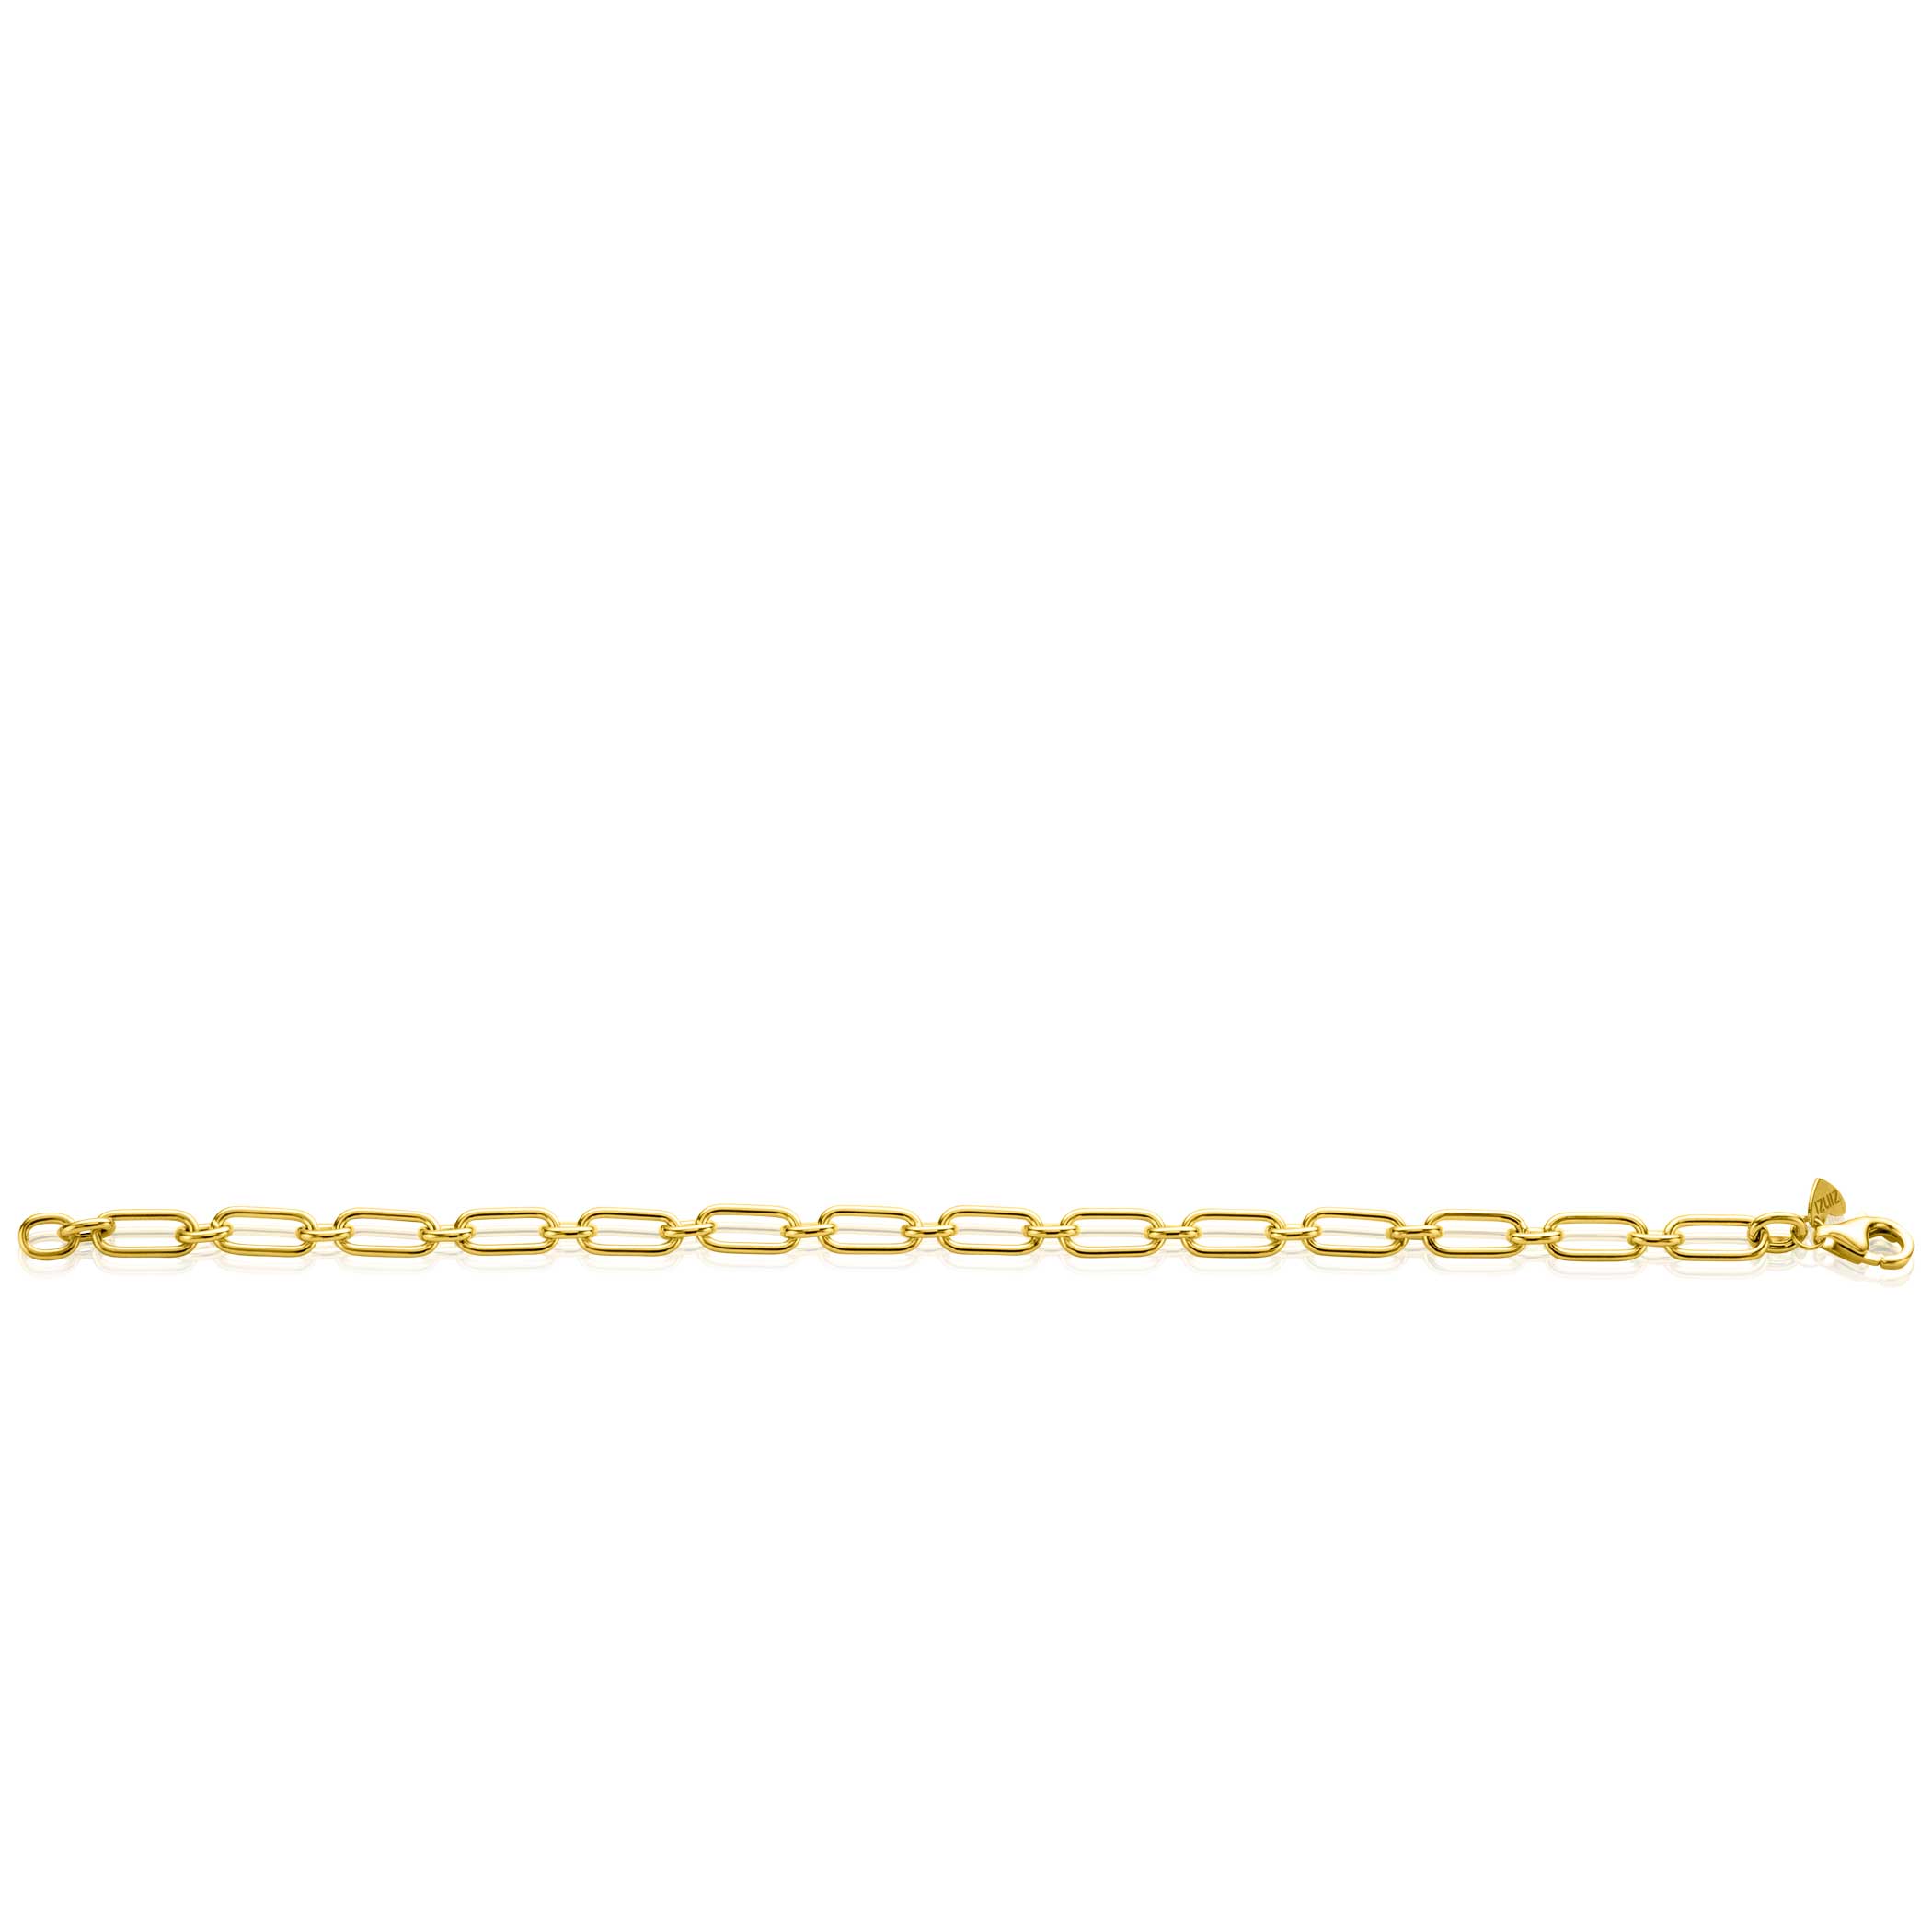 ZINZI Gold 14 krt gouden armband met brede fantasie schakels van 5mm breed, lengte 19cm ZGA354